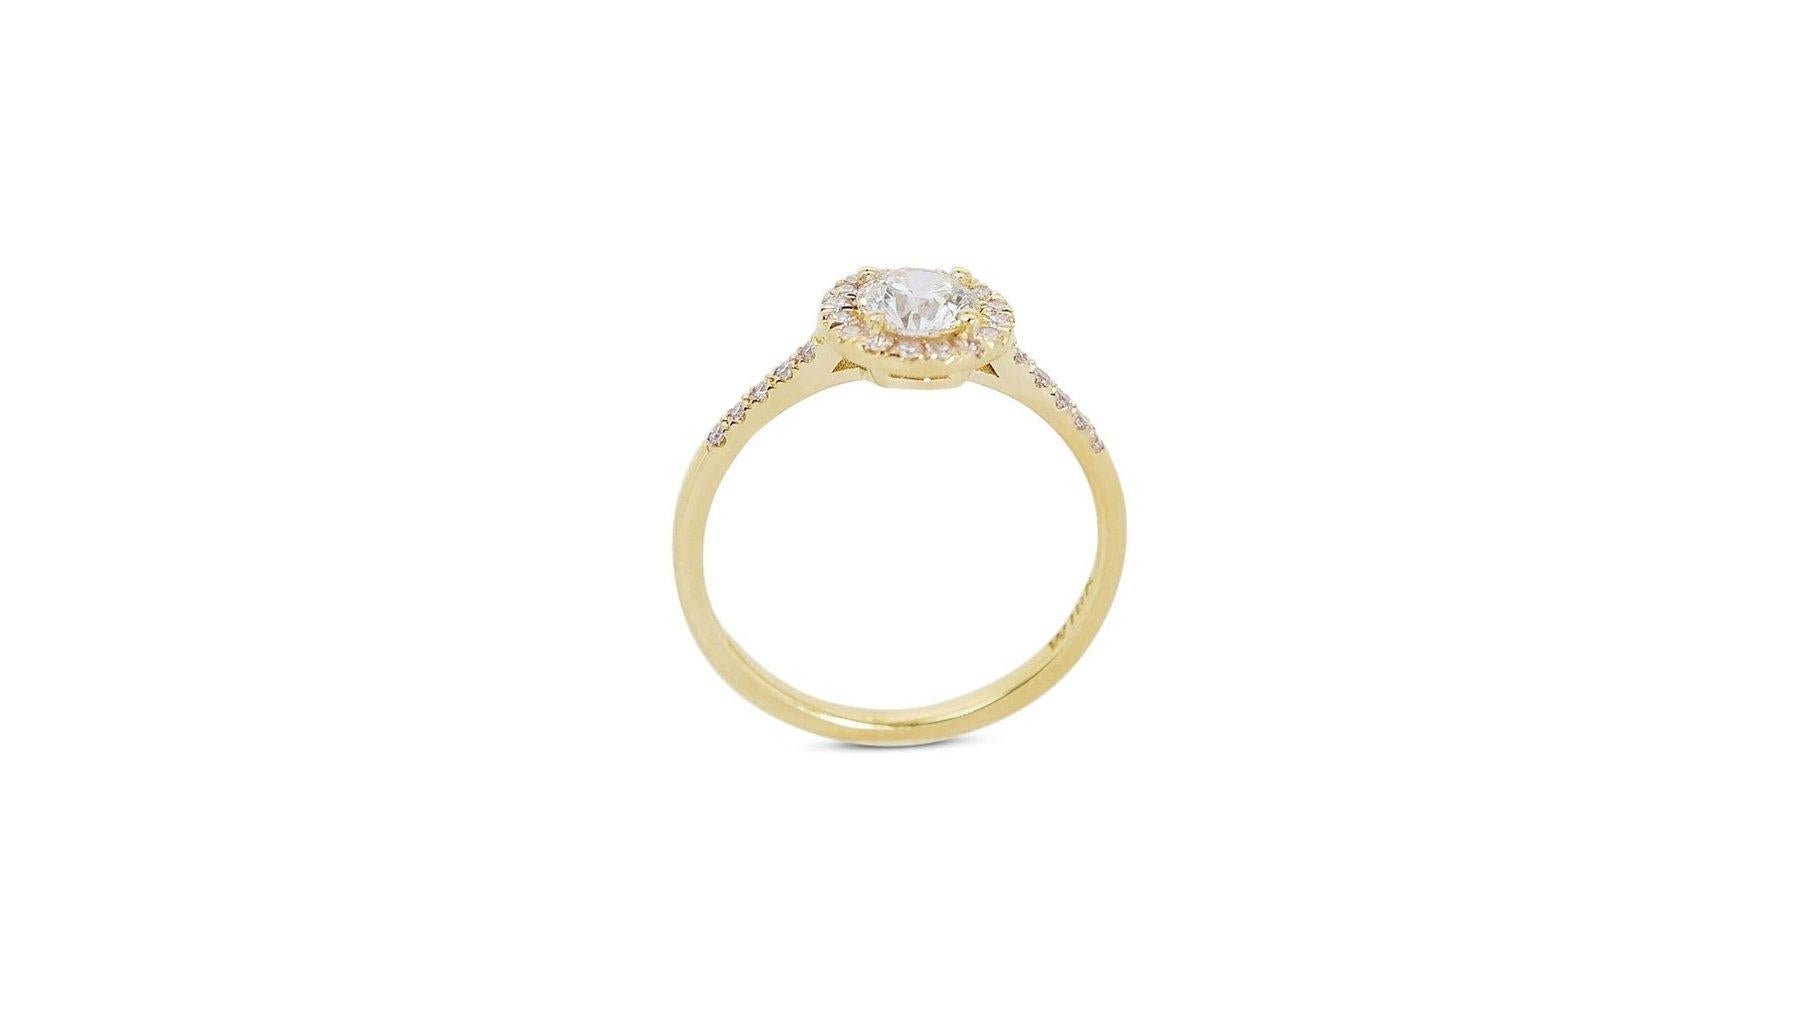 Schillernder 1,36 Karat Diamanten Halo-Ring aus 18 Karat Gelbgold - GIA zertifiziert

Enthüllen Sie die Essenz zeitloser Eleganz mit diesem klassischen Halo-Ring aus 18 Karat Gelbgold, in dessen Zentrum ein prächtiger runder Diamant von 1,16 Karat